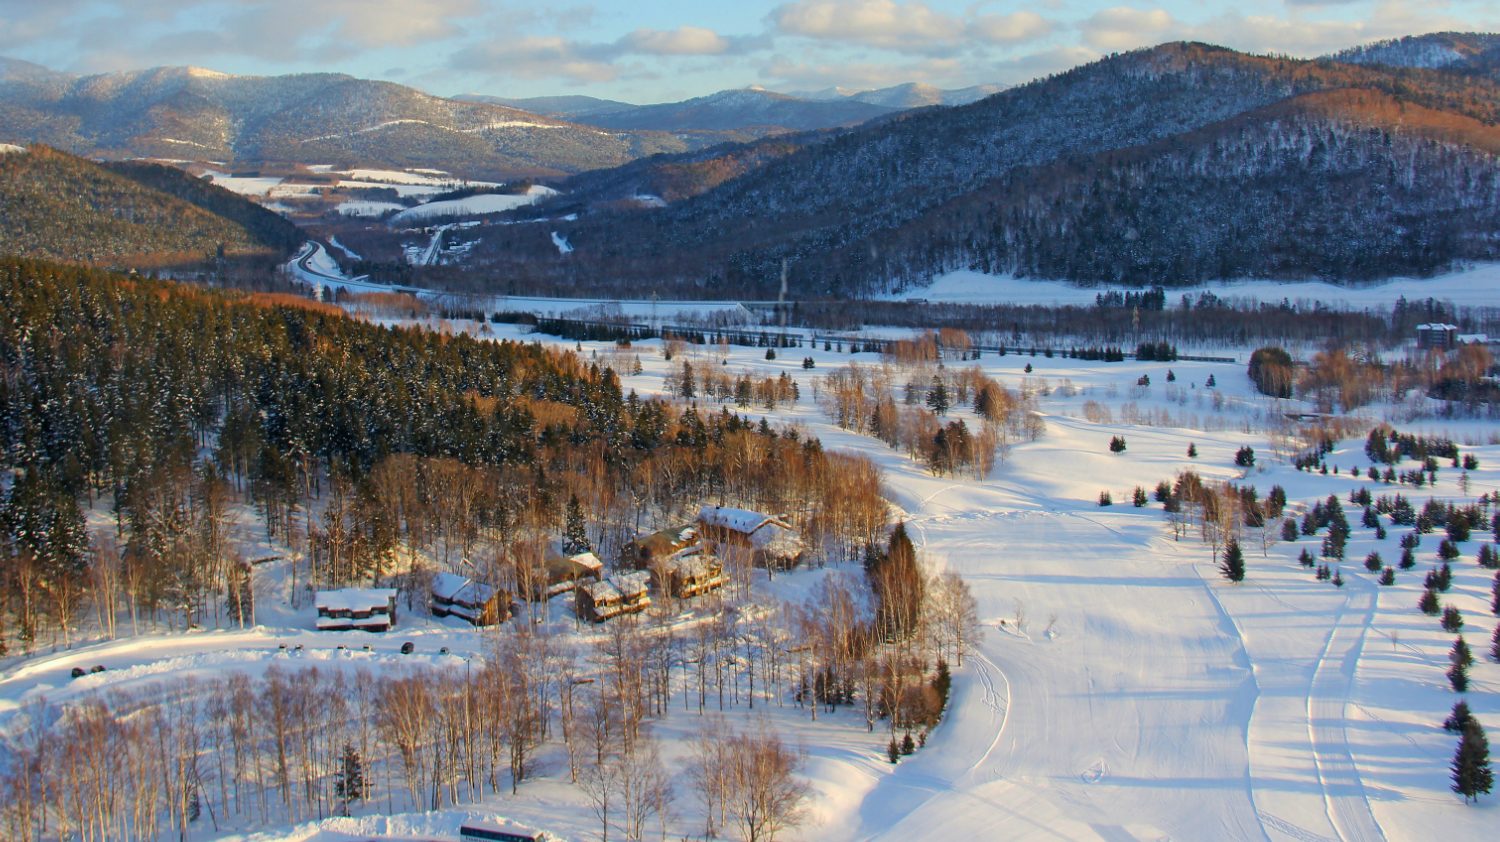 Japan Ski Resort Tomamu